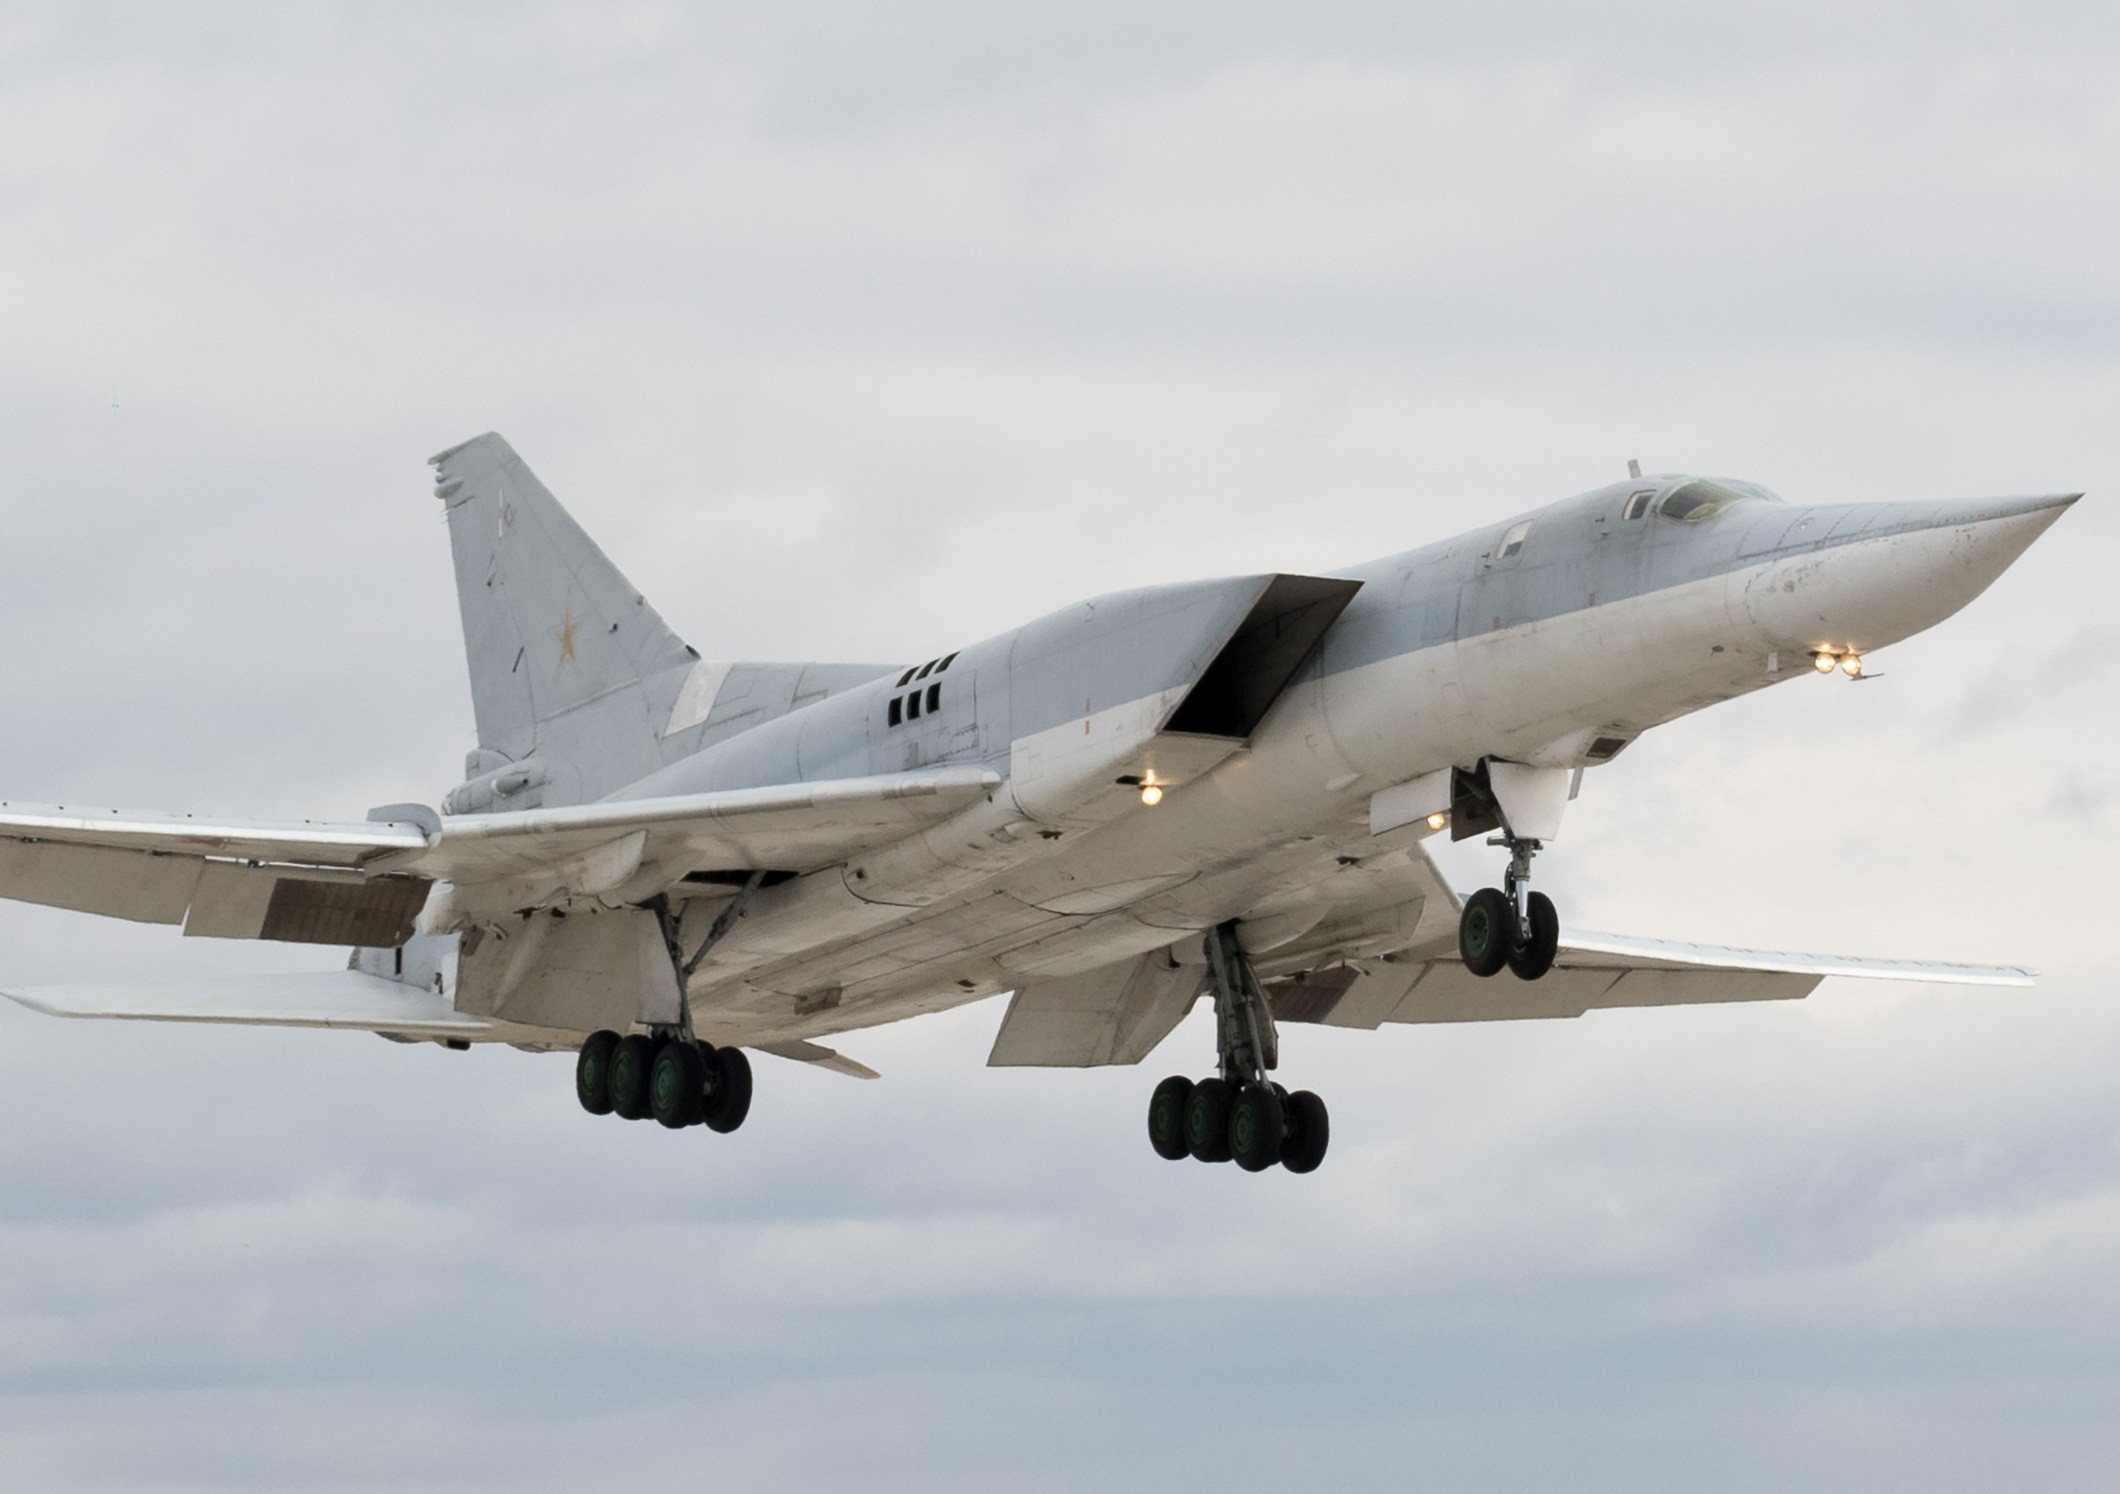 Ucrânia diz ter derrubado avião militar da Rússia usado em ataque